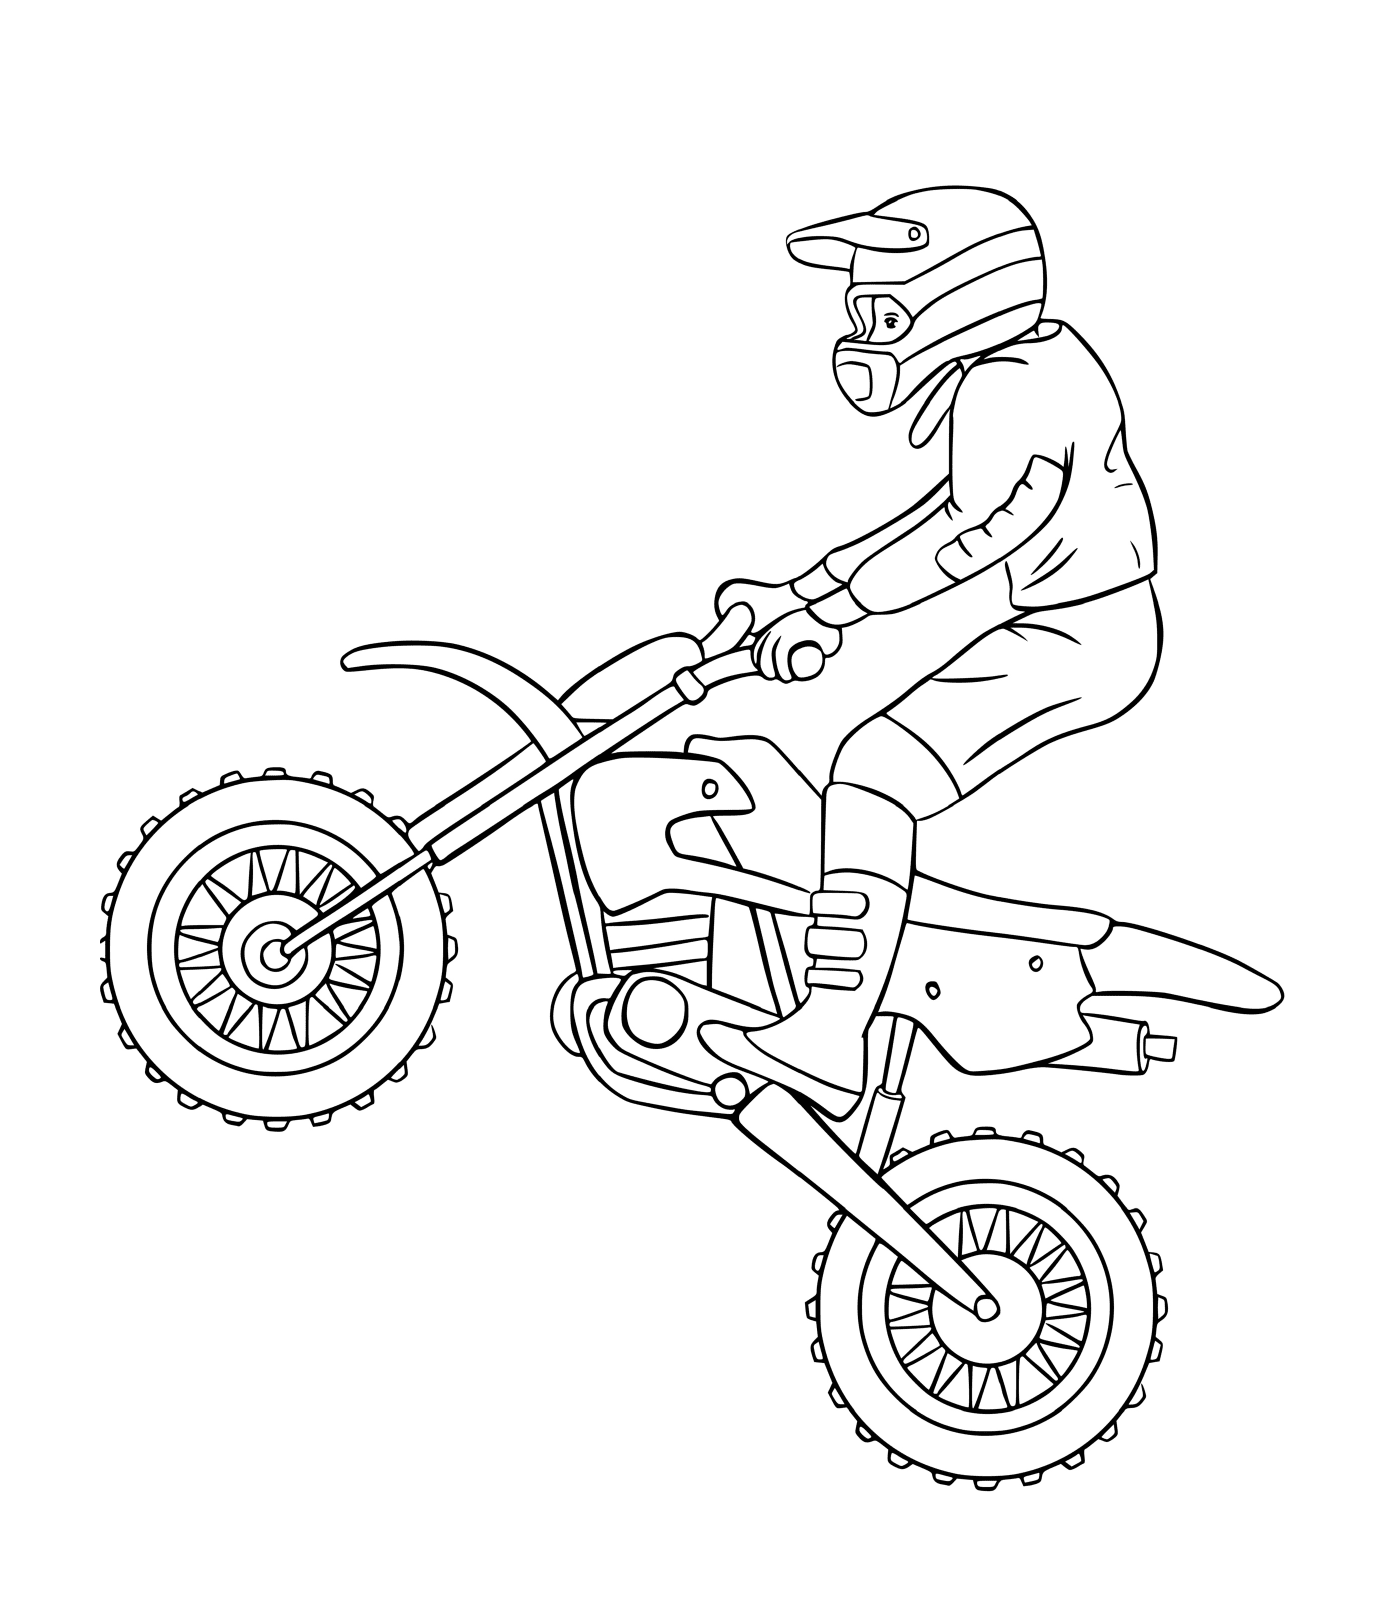   homme sur moto cross 